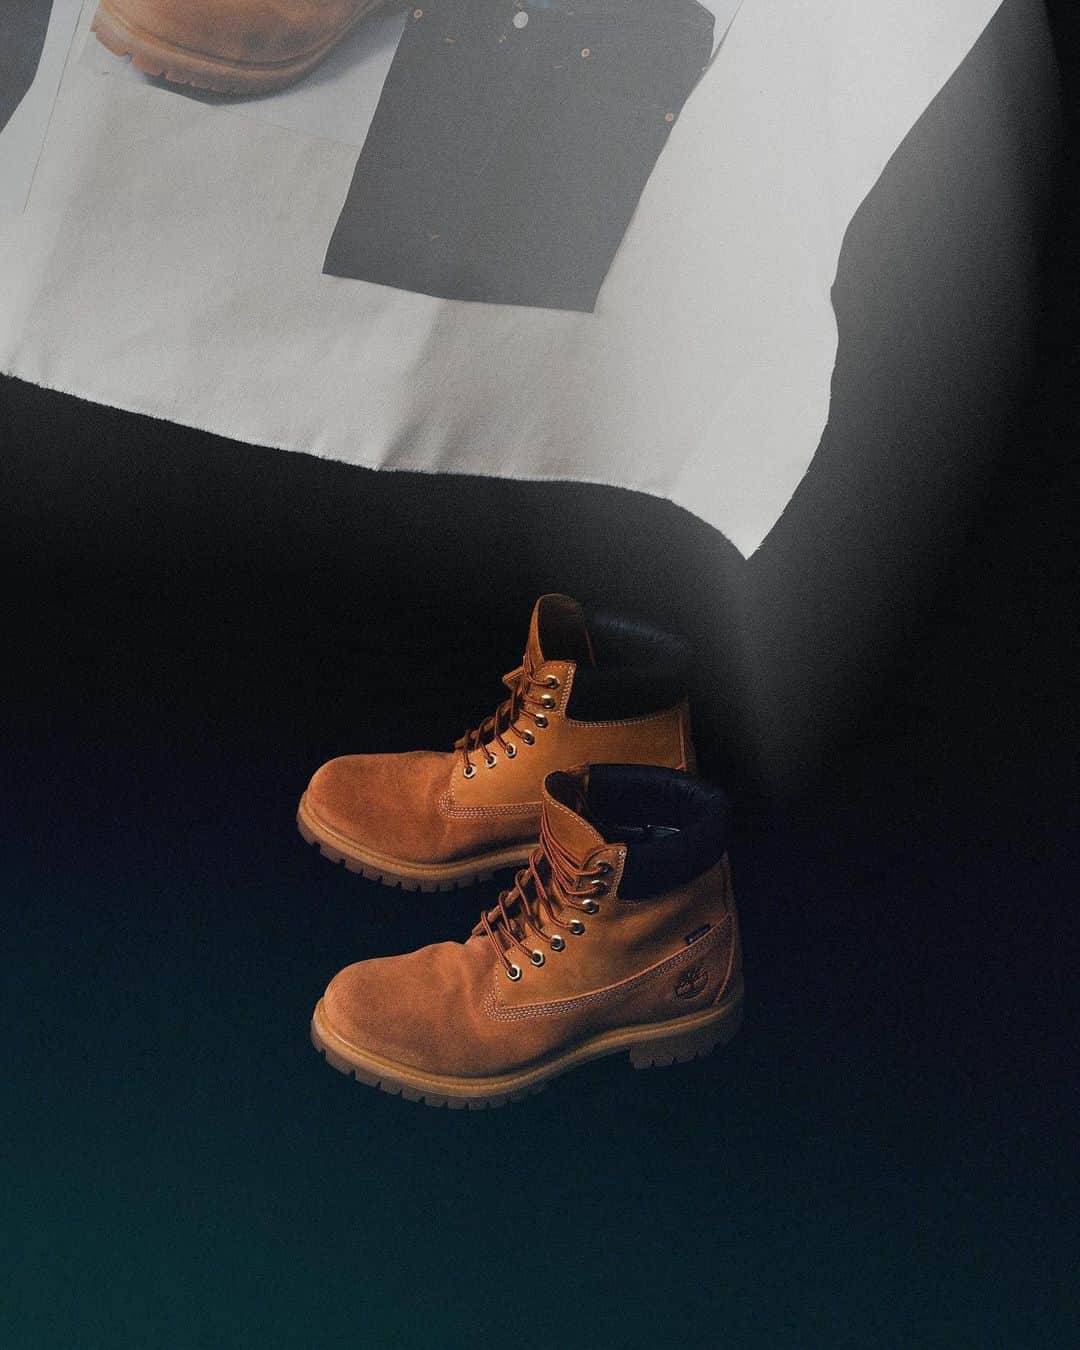 ミタスニーカーズさんのインスタグラム写真 - (ミタスニーカーズInstagram)「Timberland 6IN PREMIUM VIBRAM GTX “GORE-TEX” “WHIZLIMITED x mita sneakers”   エイジングを楽しむコラボブーツ  1973年に世界初の完全防水レザーブーツとして誕生し、通称“イエローブーツ”とも呼ばれている＜ティンバーランド＞の傑作6インチブーツ。クラシックなスタイルはそのままに、LWG（レザーワーキンググループ）認定を受けているタンナリーで生産された「BETTER LEATHER」を採用。内部には保温性の高い「PrimaLoft® Insulation」や疲れを軽減し衝撃を吸収する「ANIT-FATIGUE TECHNOLOGY™」のフットベッドの搭載など、良好な履き心地でタウンからアウトドアまで幅広く活用できる定番アイテム。本作は、＜WHIZLIMITED＞と『mita sneakers』がチームアップした三者によるコラボレーションモデル。上質なスウェードとヌバックのコンビアッパーに足元をドライで快適に保つ防水透湿素材「GORE-TEX®」、グリップ力と耐久性に優れる「Vibram®」のラバーラグアウトソールを搭載して機能面をアップグレード。エンジニアブーツのように履き込むほどに魅力的なエイジングが楽しめるようにデザインされており、両者によるこだわりのアプローチによって再構築したスペシャルな1足。  Photo - @yutto0129」11月27日 2時34分 - mitasneakers